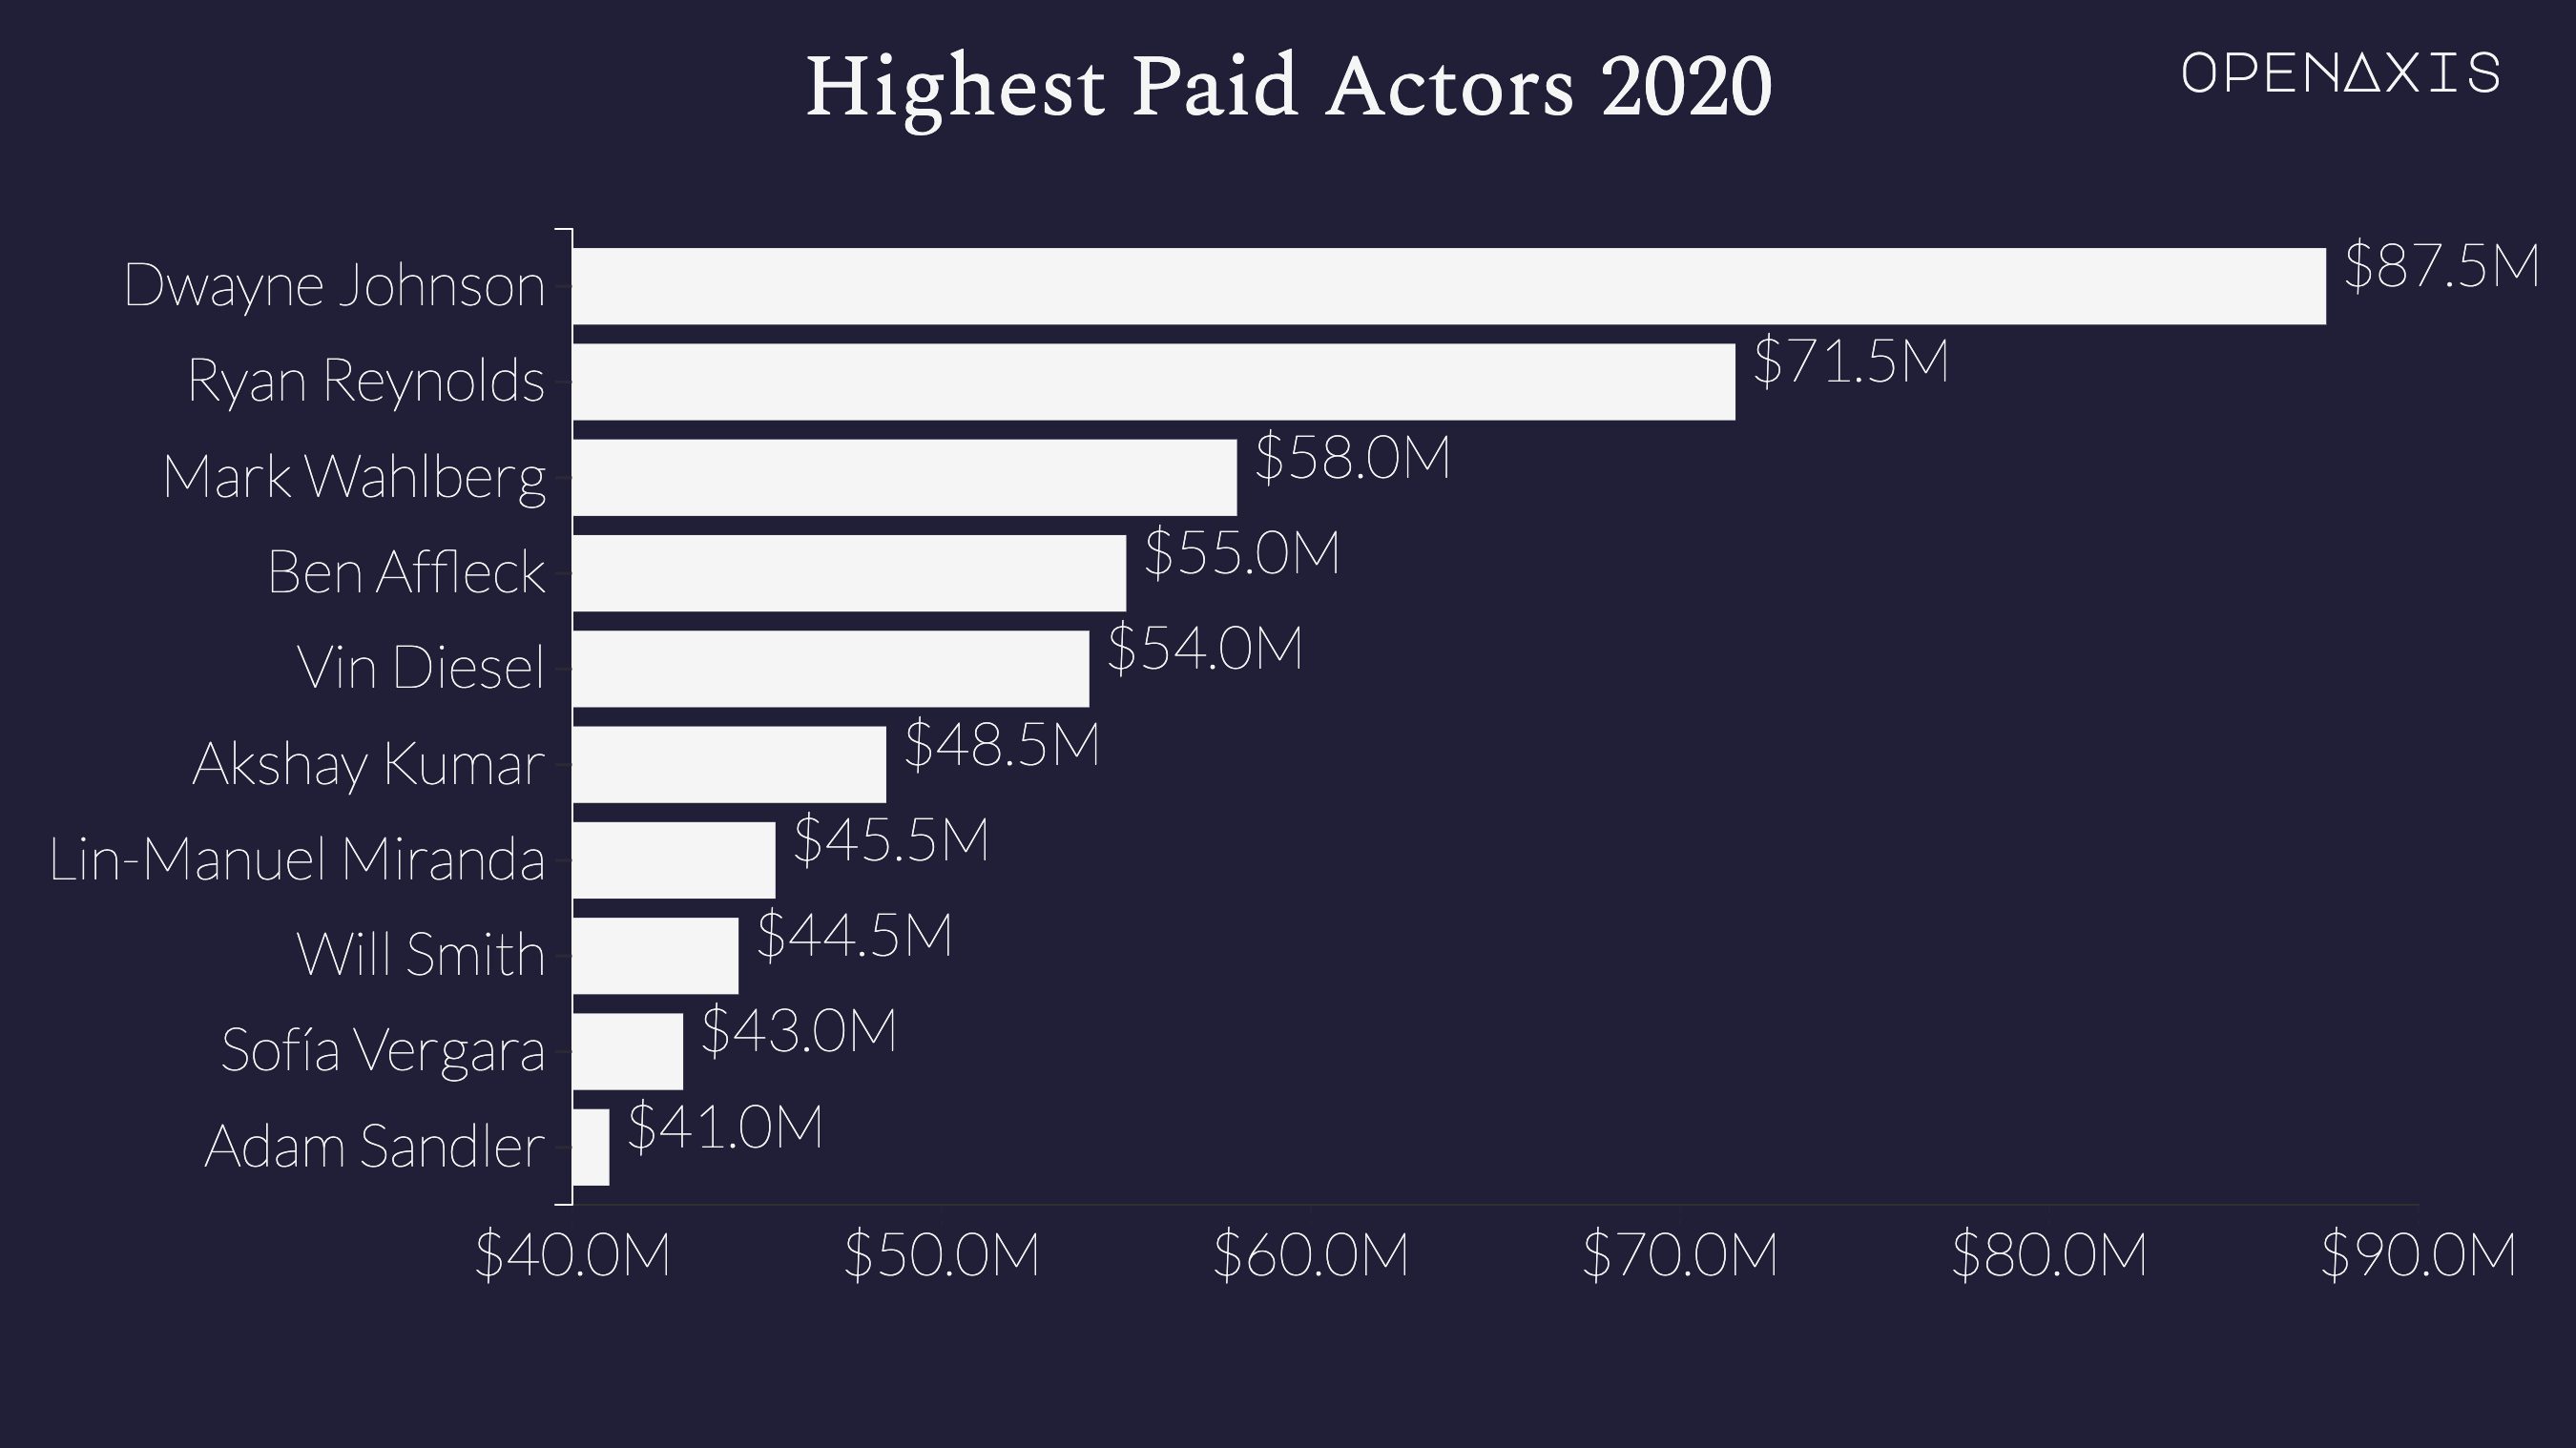 "Highest Paid Actors 2020"